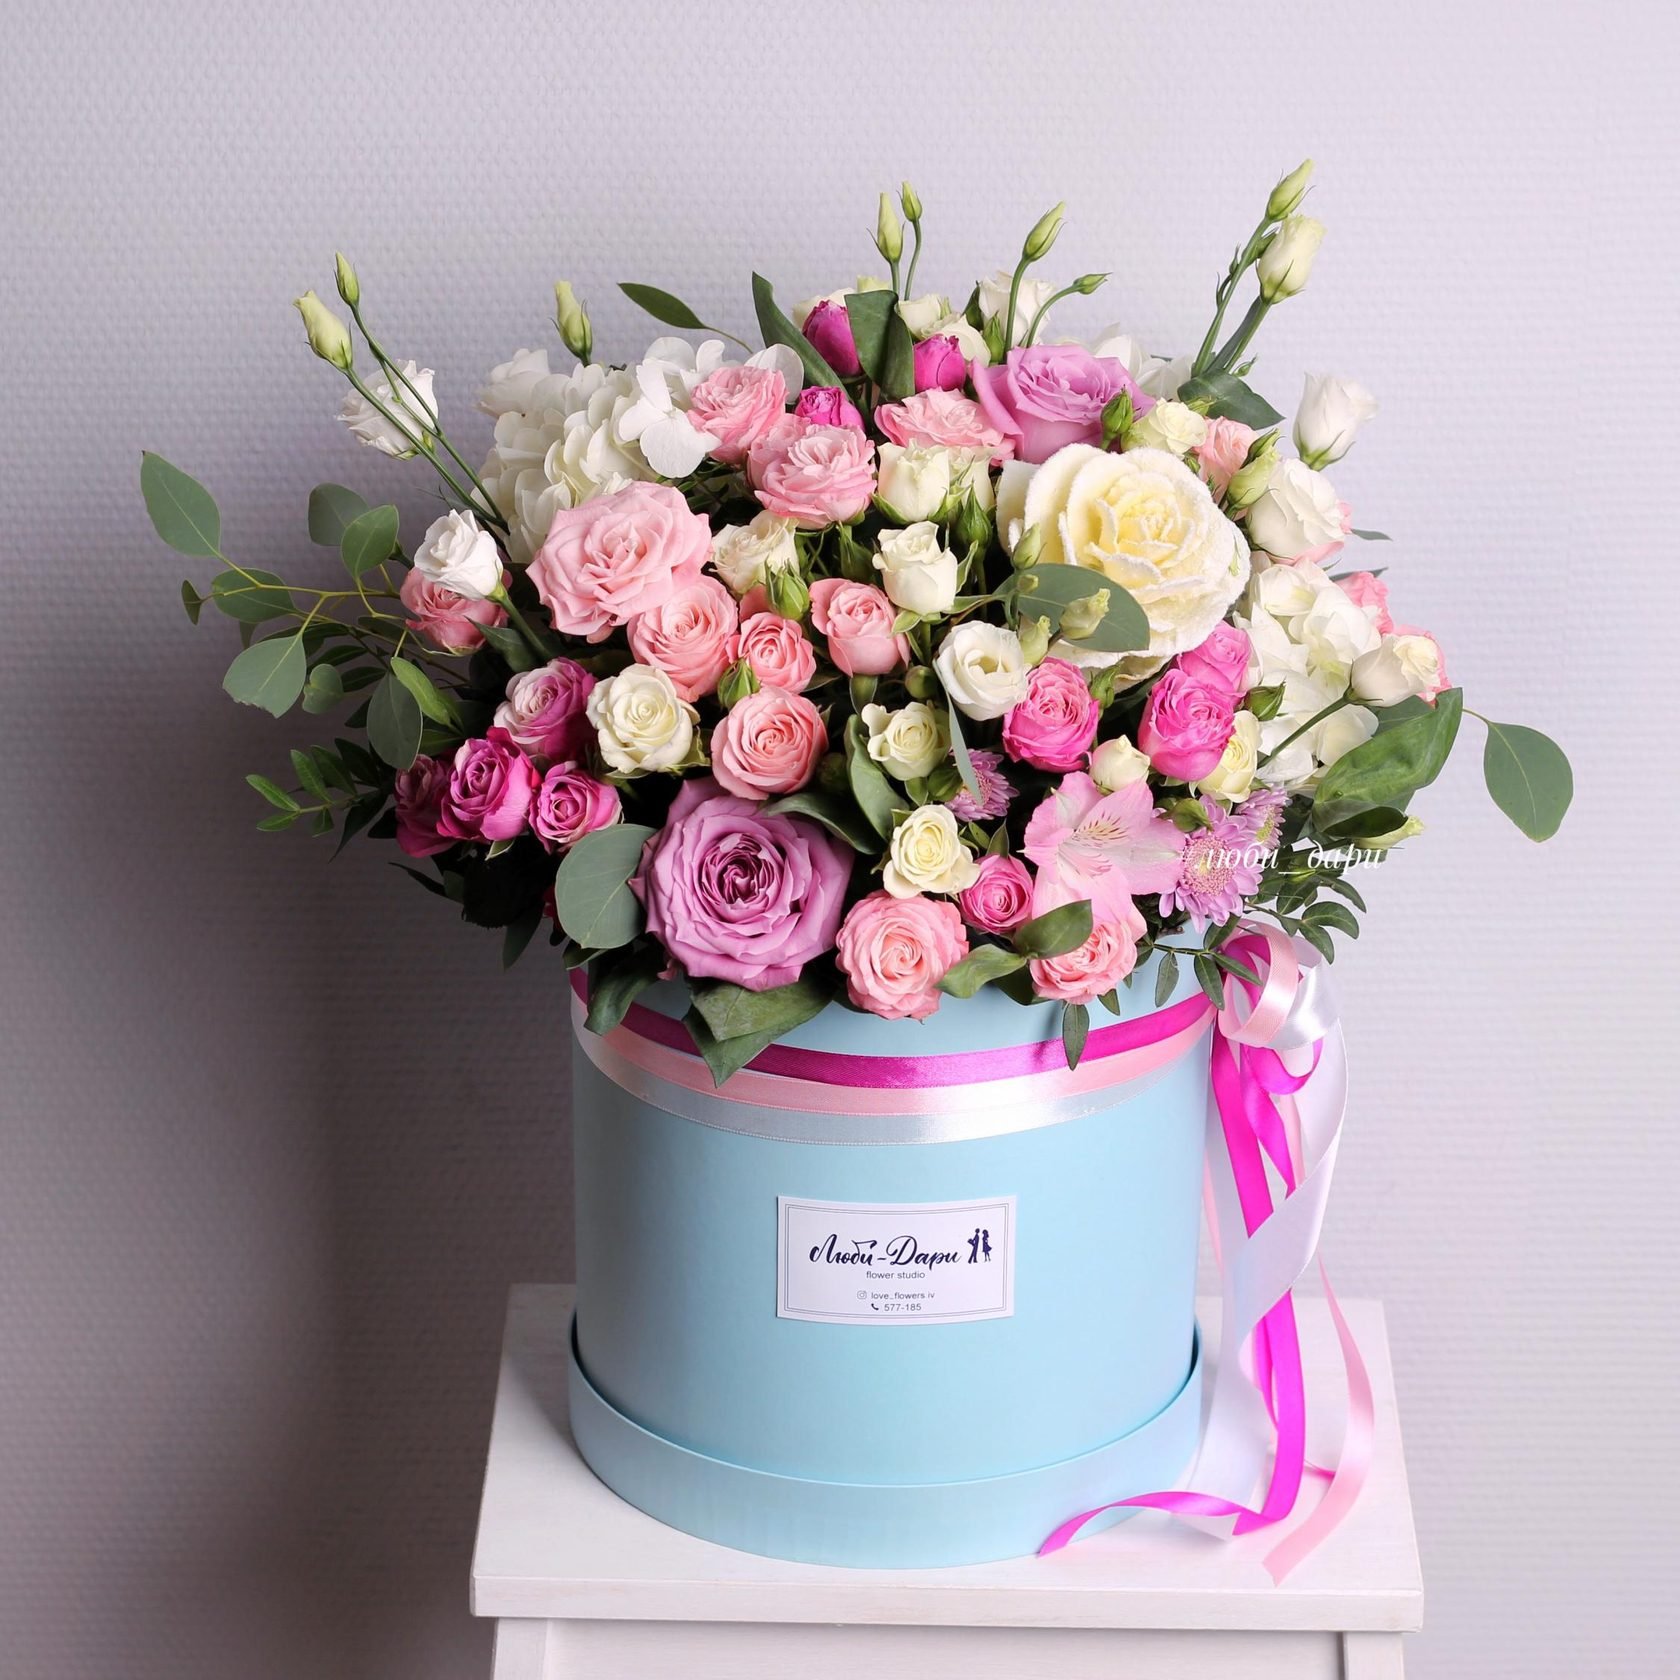 Фото цветы в коробке на день рождения